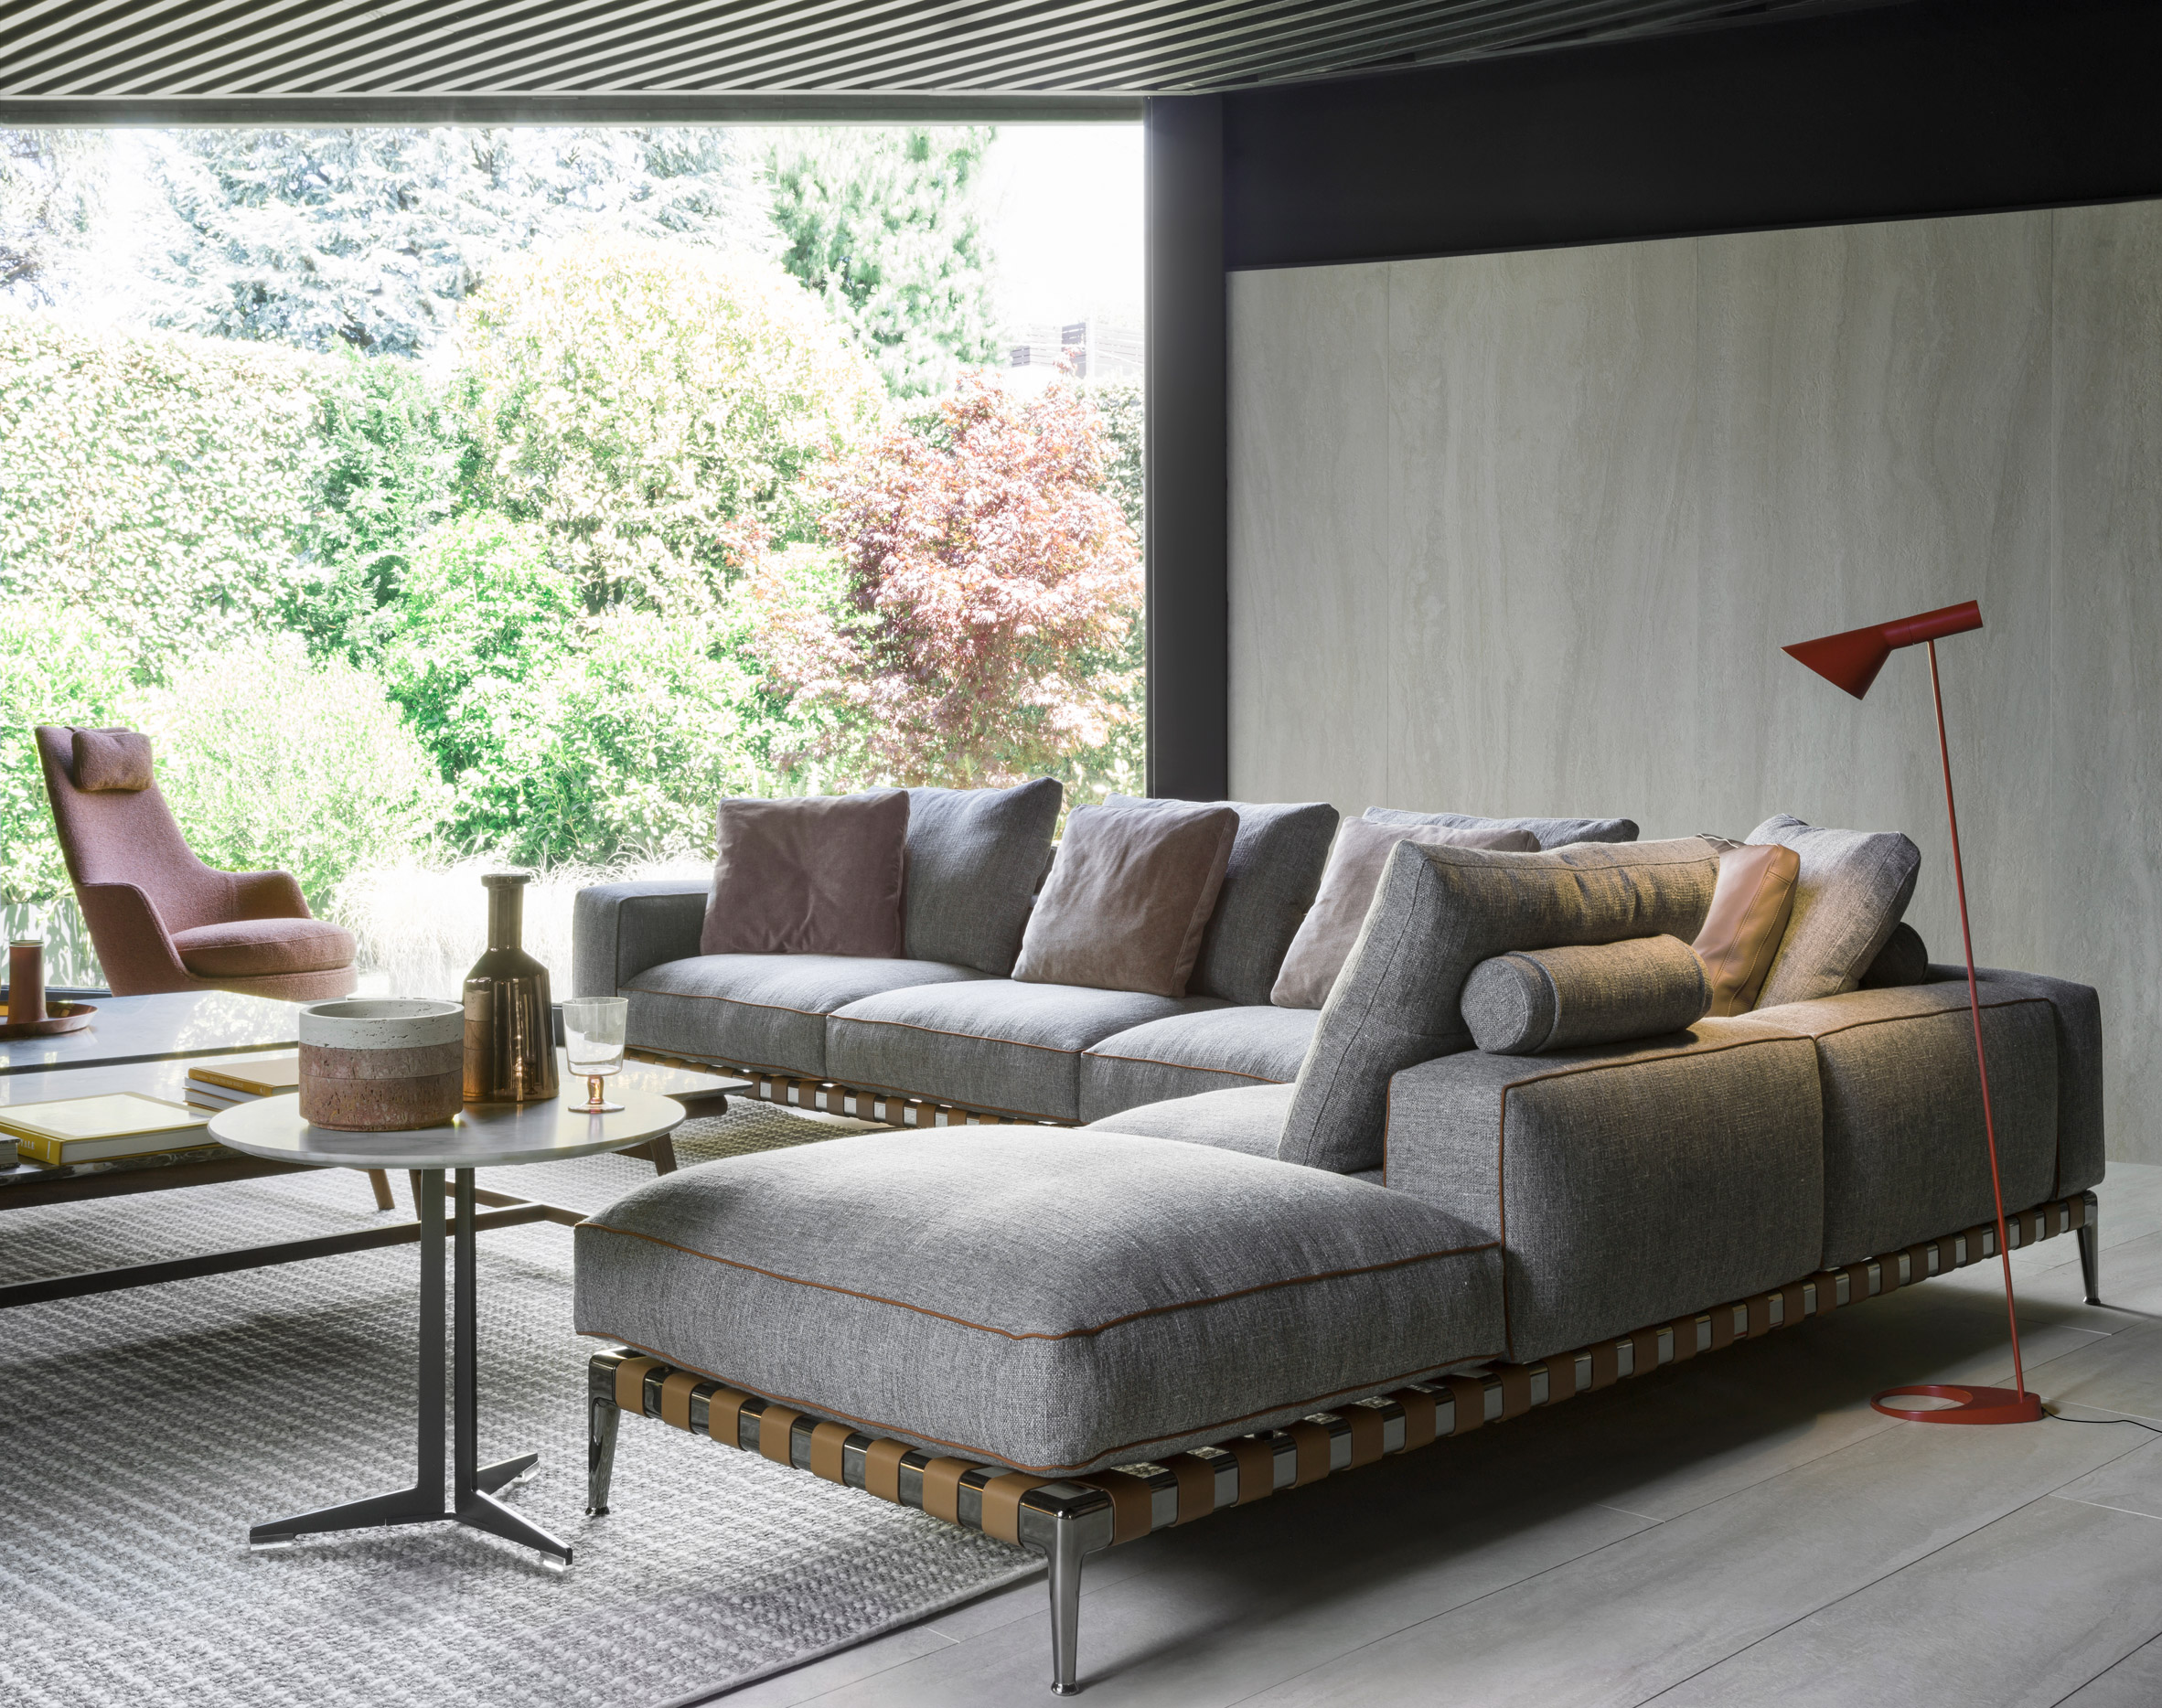 Gregory sofa by Antonio Citterio for Flexform